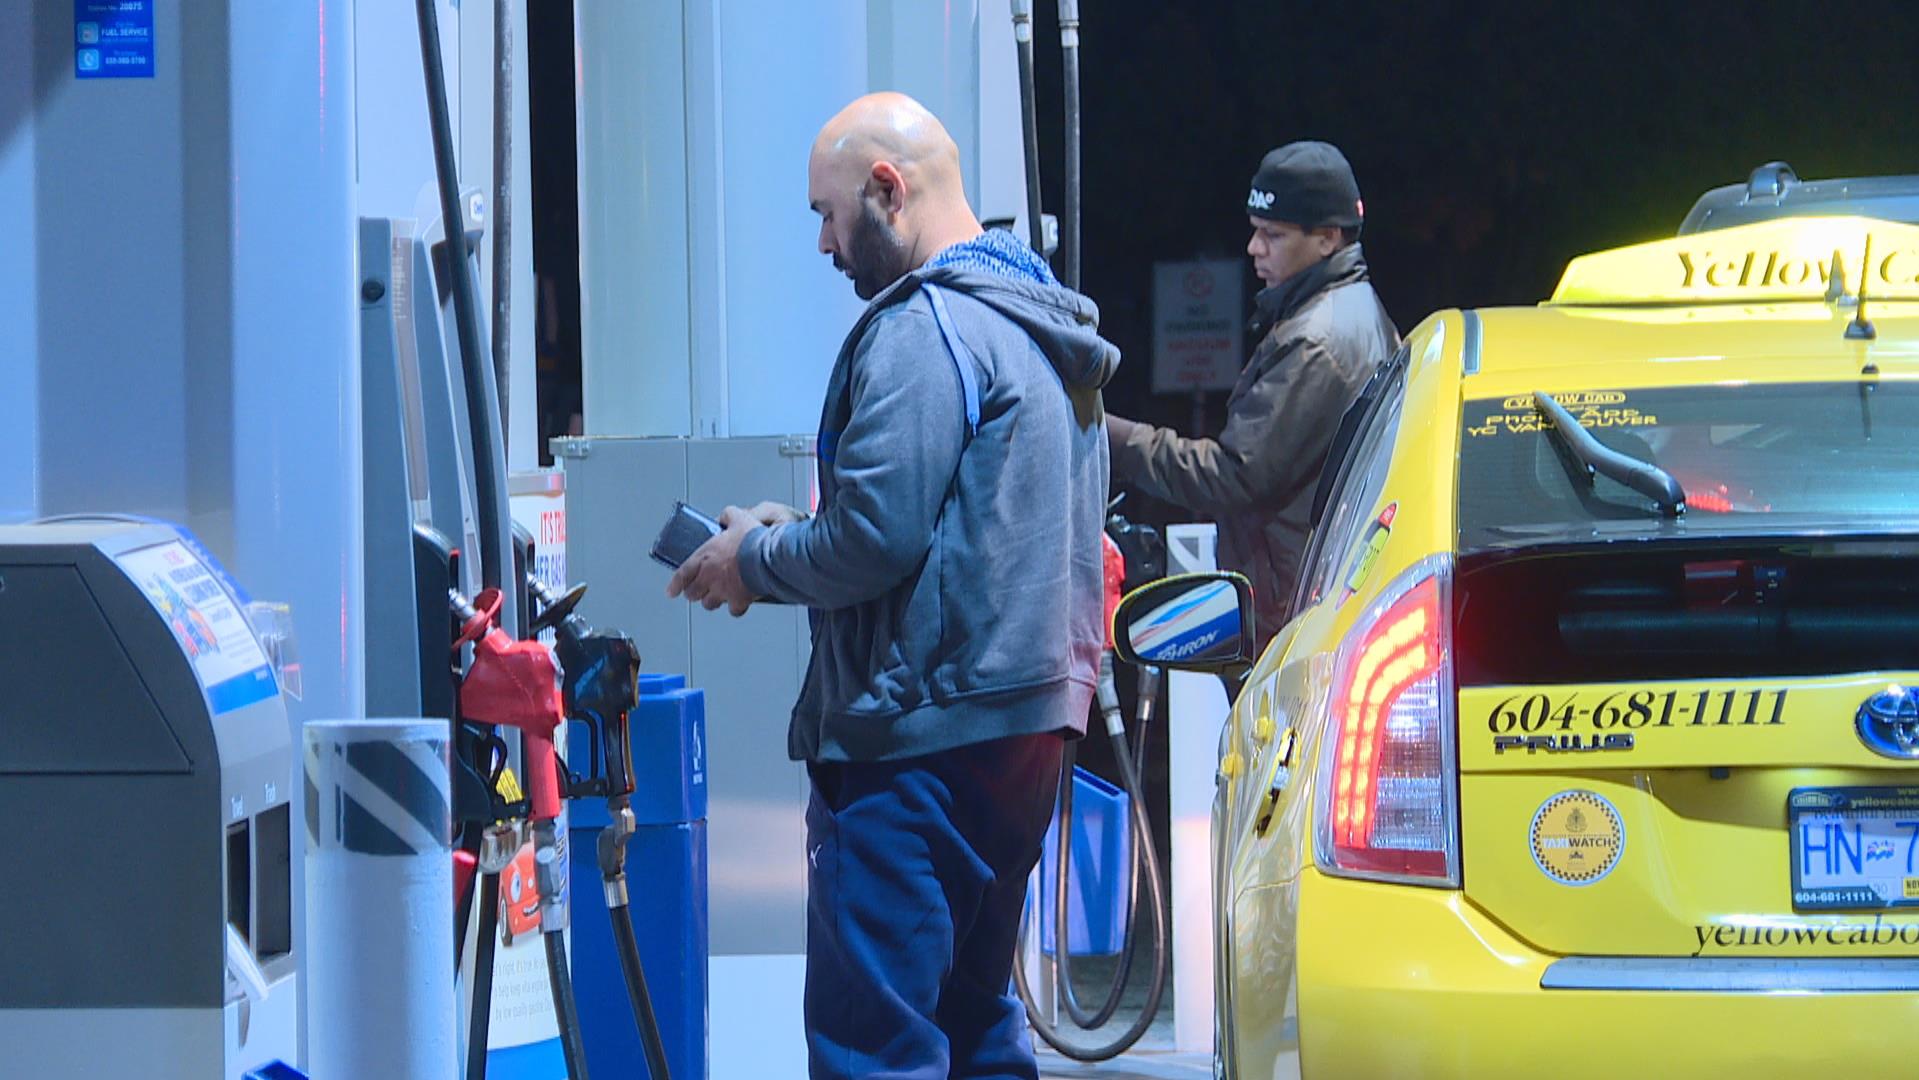 L'augmentation du prix de l'essence est-elle une bonne nouvelle pour la planète?
L'augmentation du prix de l'essence est-elle une bonne nouvelle pour la planète?